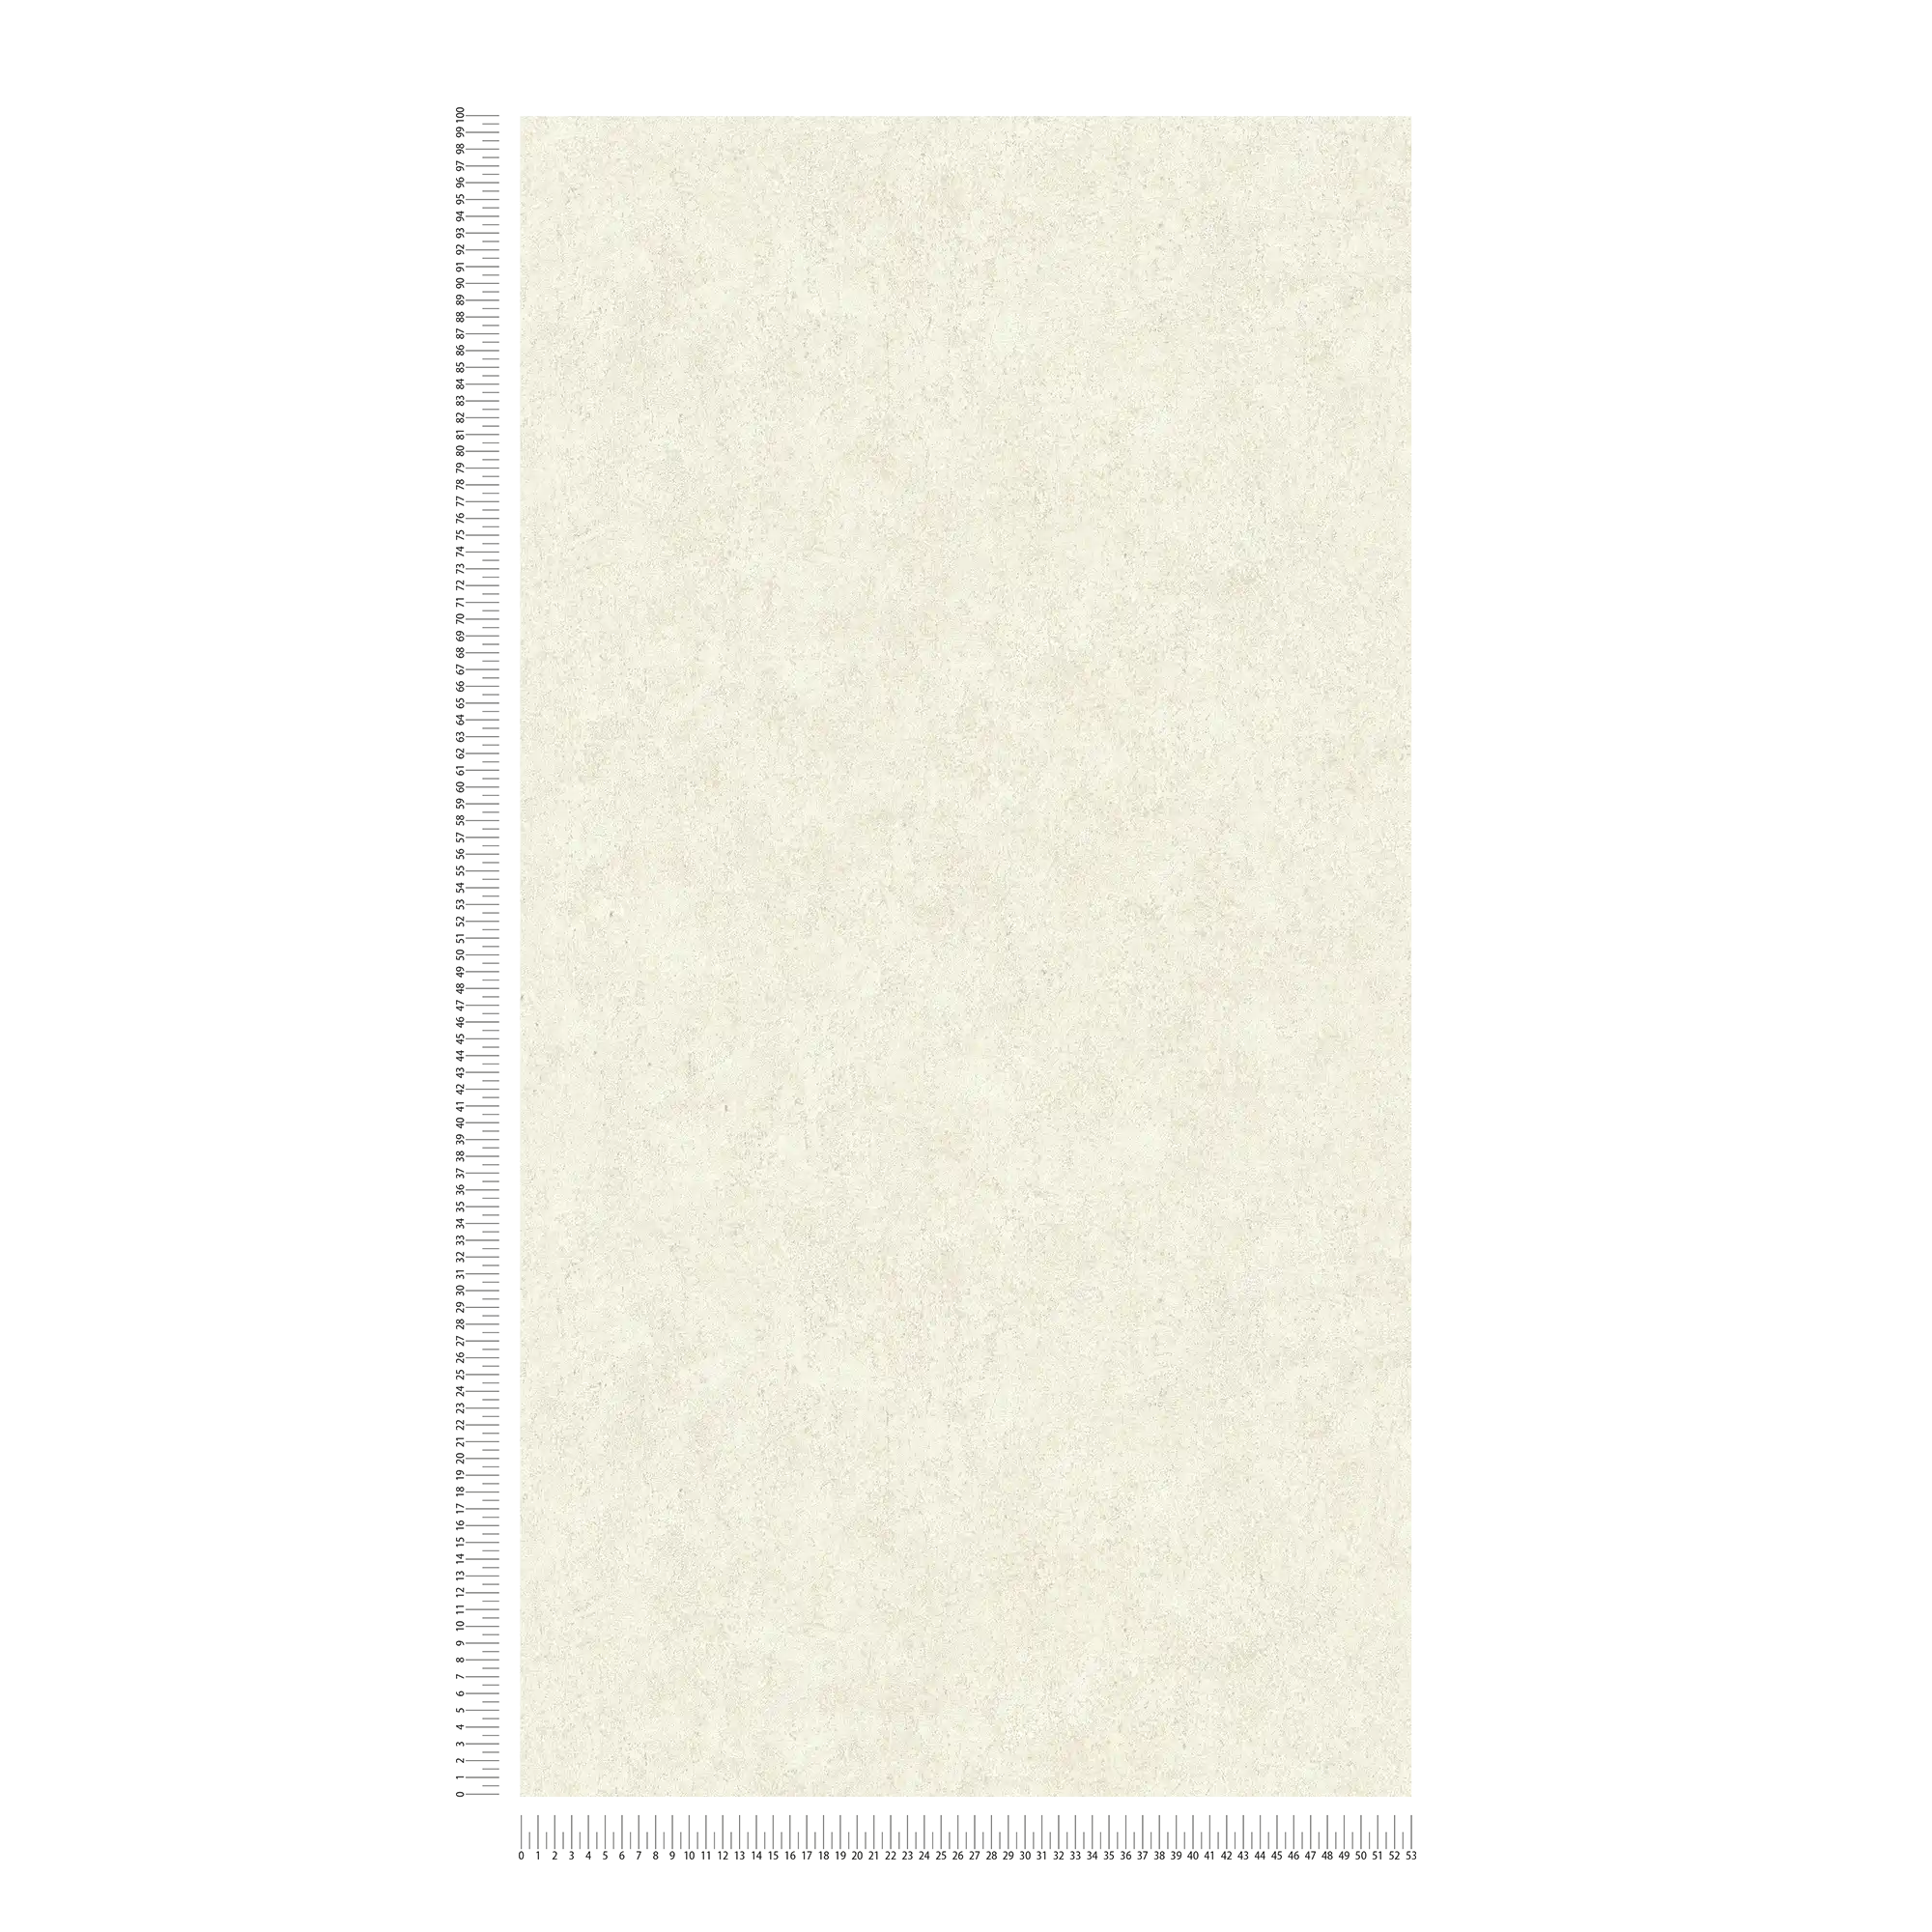             Carta da parati crema effetto intonaco con struttura bidimensionale in rilievo
        